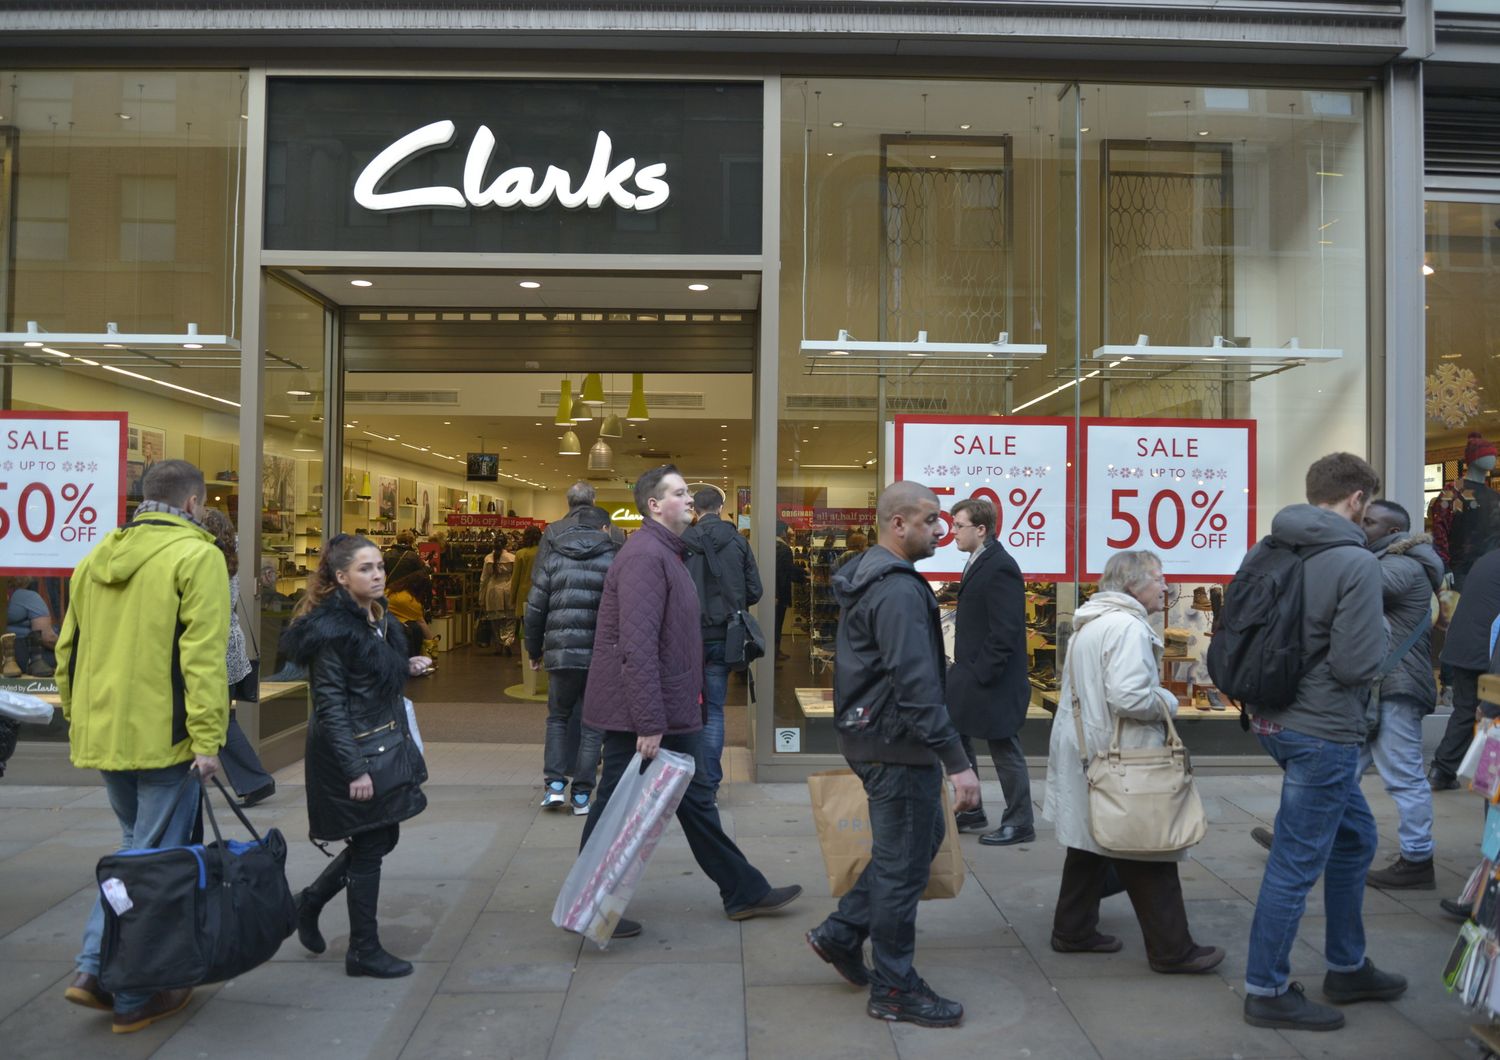 Clarks&nbsp;non produrr&agrave; pi&ugrave; scarpe nel Regno Unito, scrive il&nbsp;Telegraph